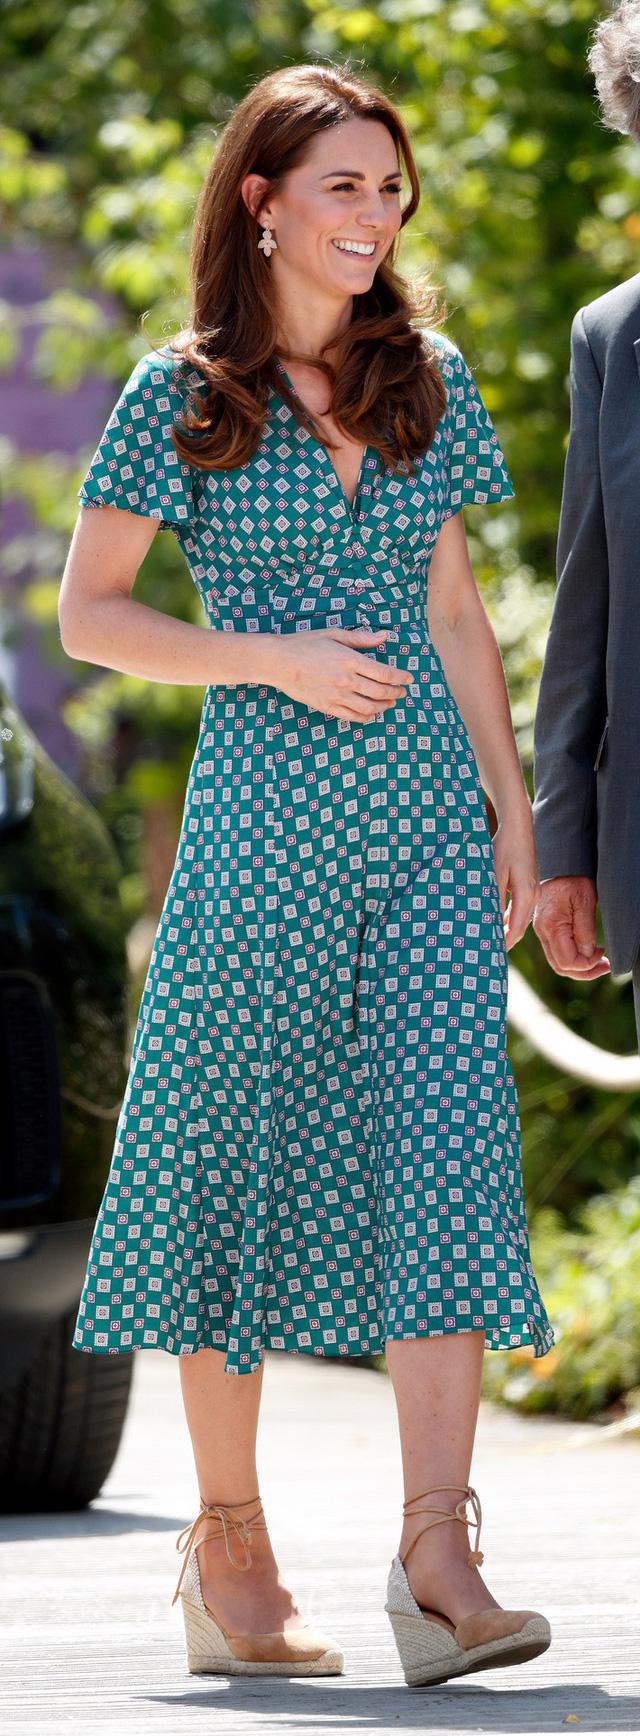 Diện váy vintage như công nương Kate Middleton, bạn đã biết cách chưa? - Ảnh 2.